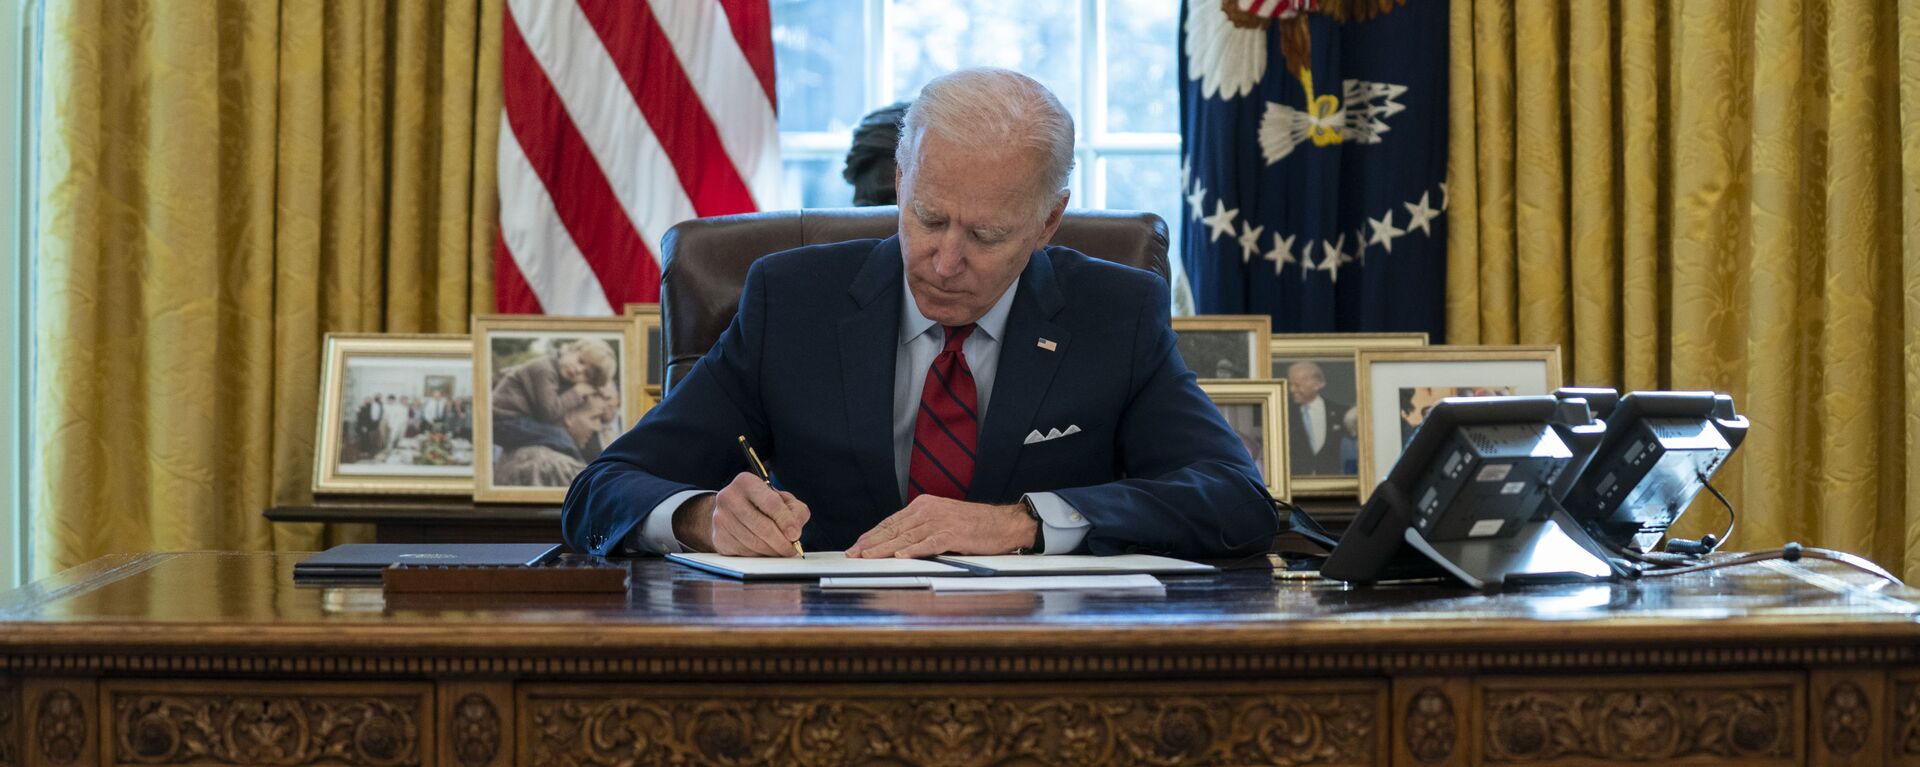 Joe Biden, presidente de EEUU, firma varios documentos ejecutivos en el Despacho Oval de la Casa Blanca, en Washington, el 28 de enero del 2021 - Sputnik Mundo, 1920, 01.02.2021